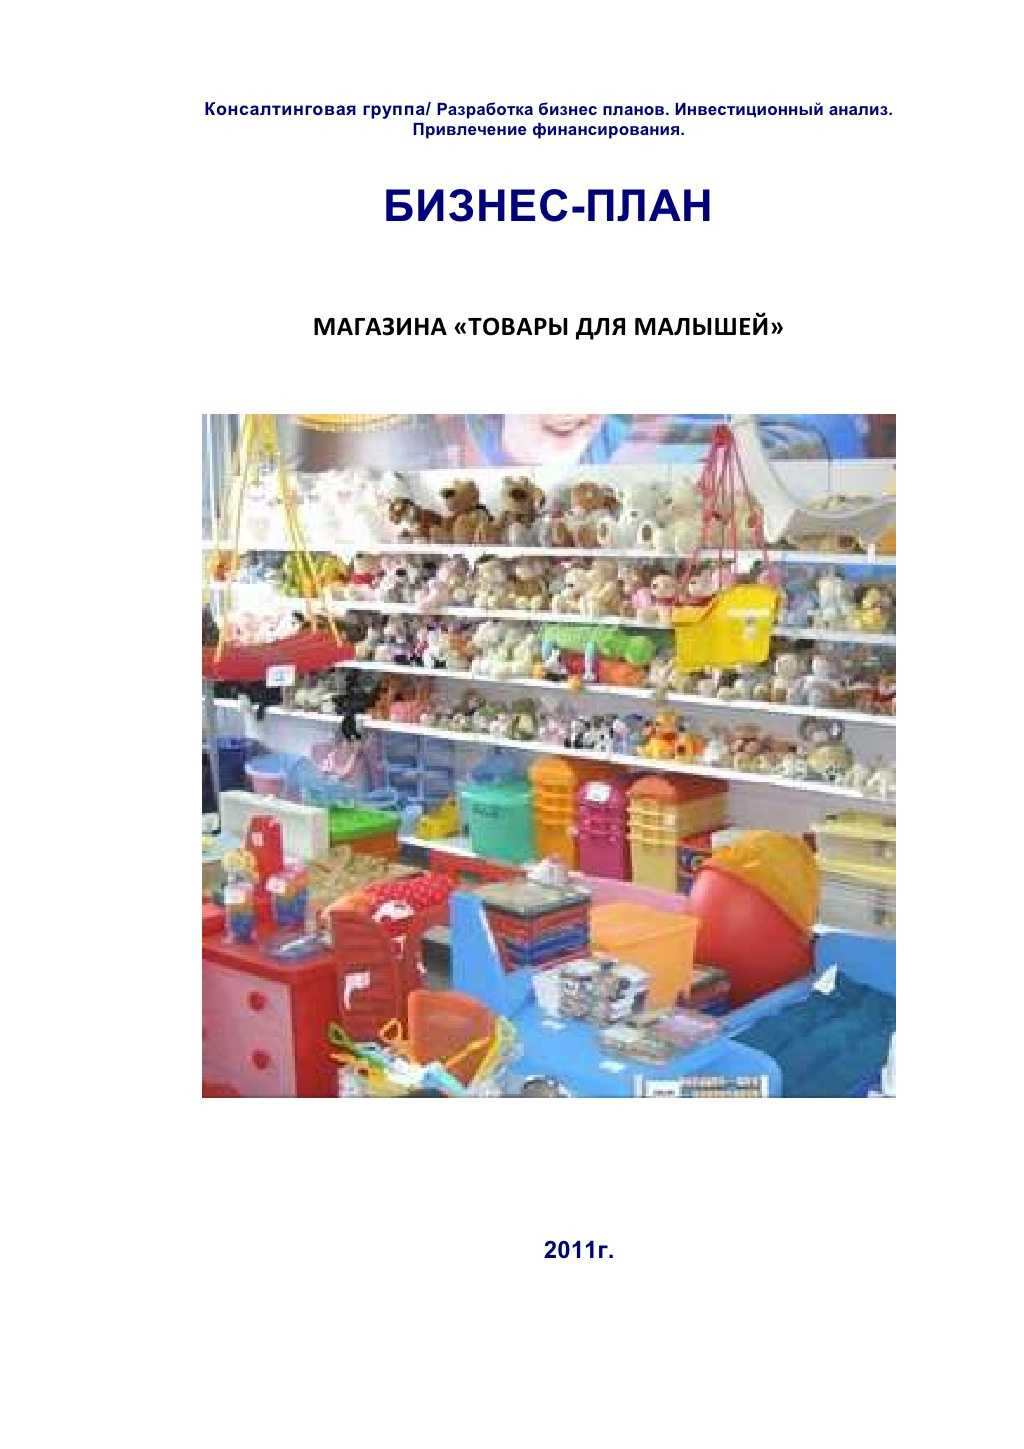 Бизнес-план магазина детских игрушек|как открыть магазин игрушек